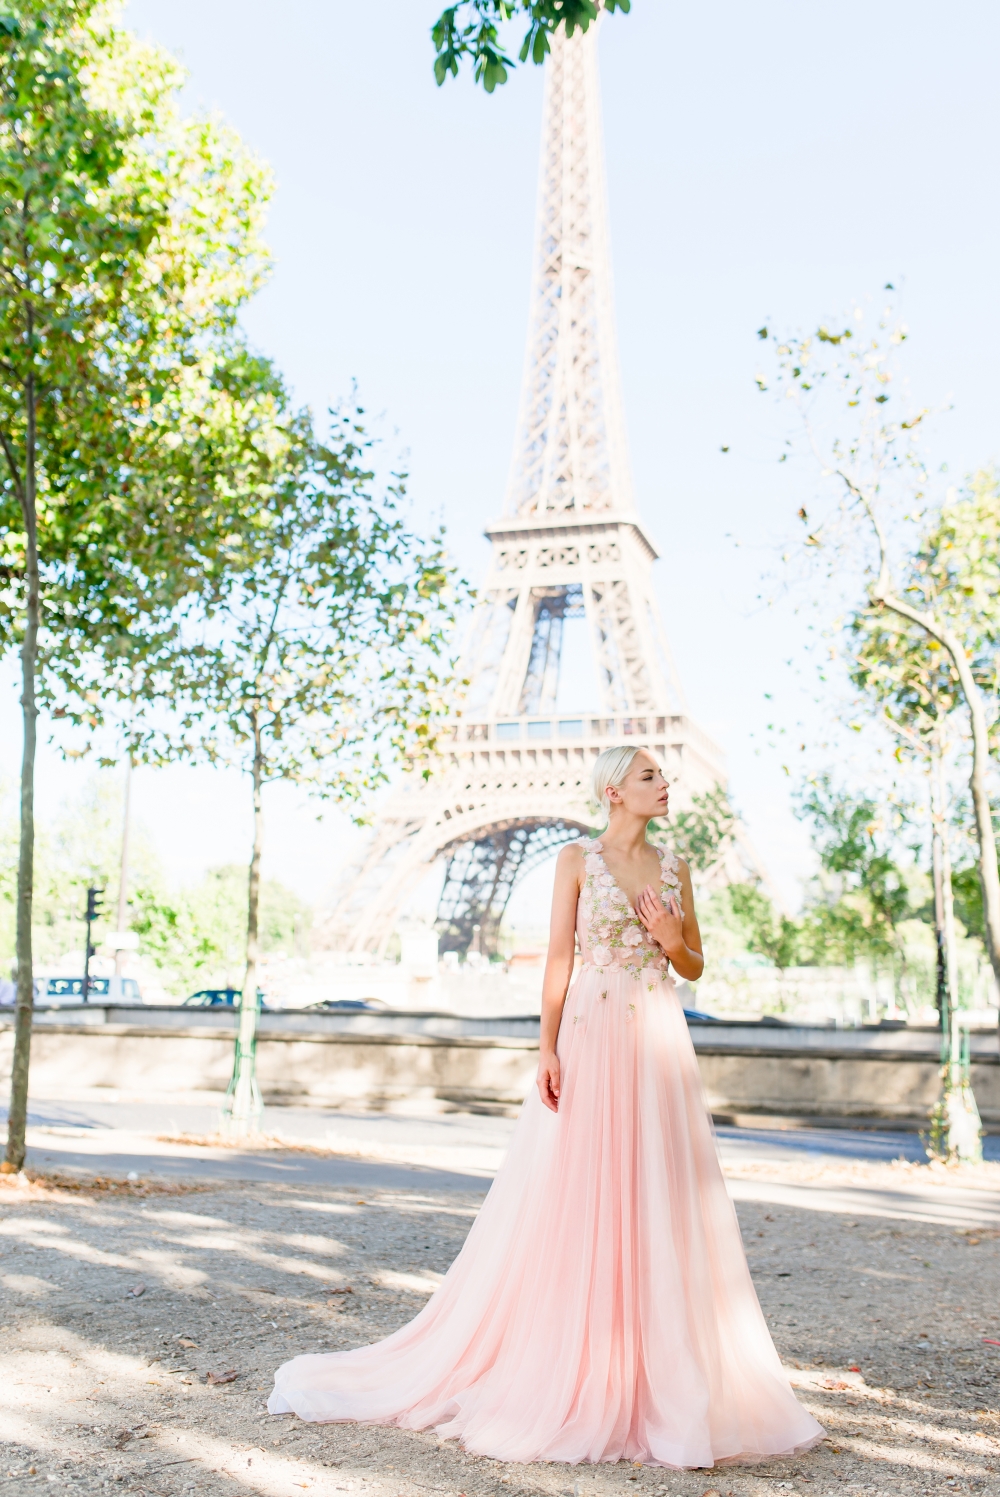 Эксклюзивное свадебное платье в нежно-розовом цвете с оригинальным верхом, декорированным объёмным цветочным принтом.